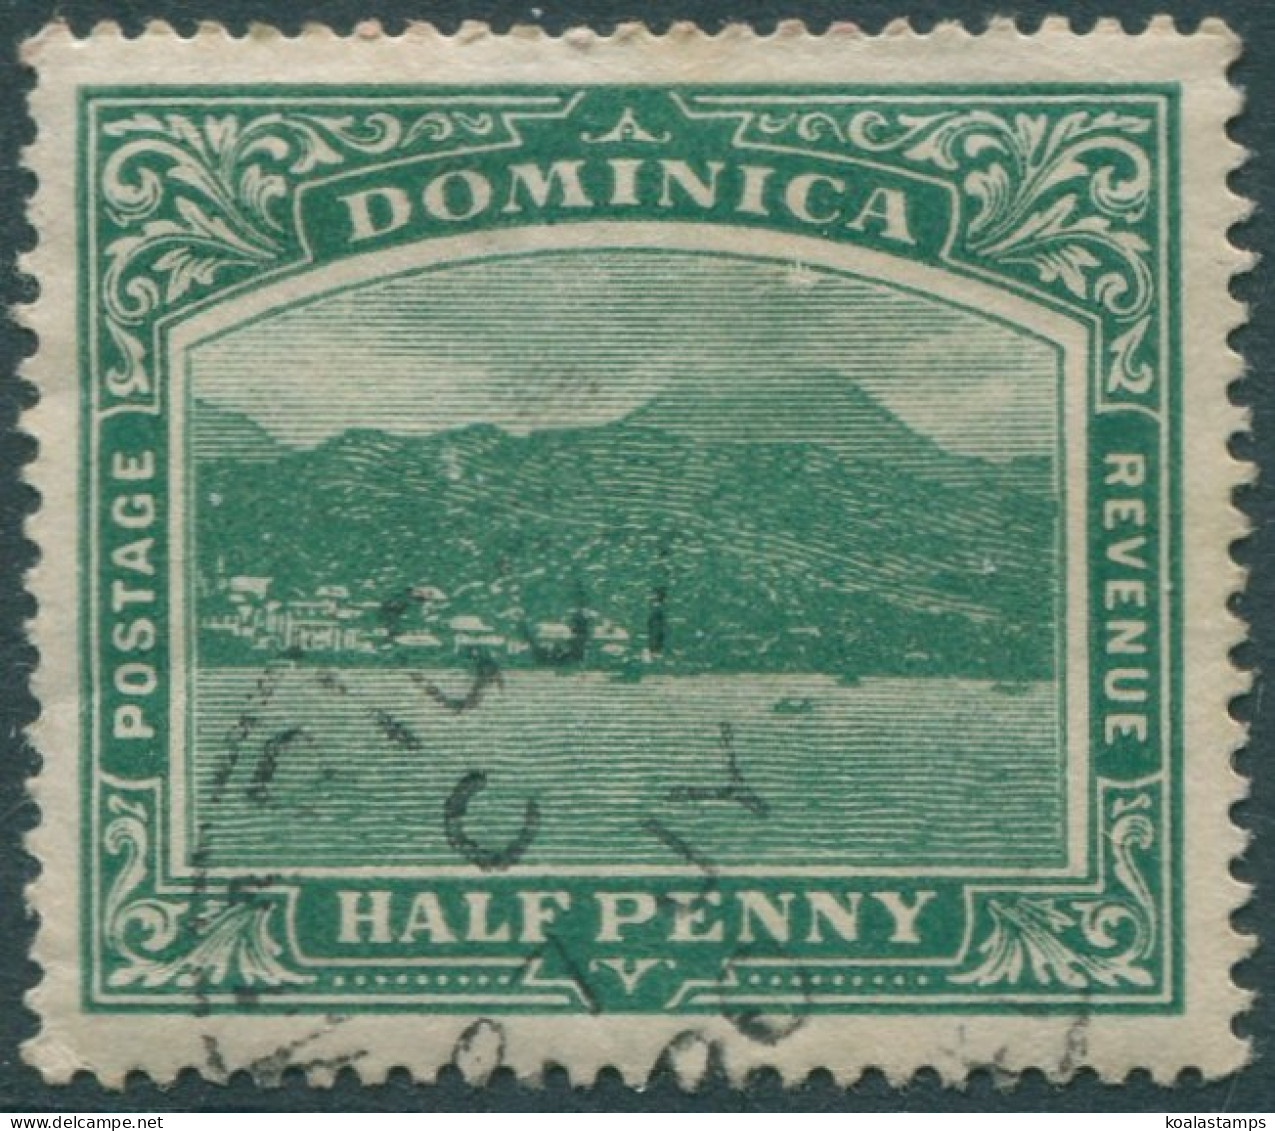 Dominica 1907 SG37 ½d Green KGV Roseau Mult Crown CA Wmk FU (amd) - Dominica (1978-...)